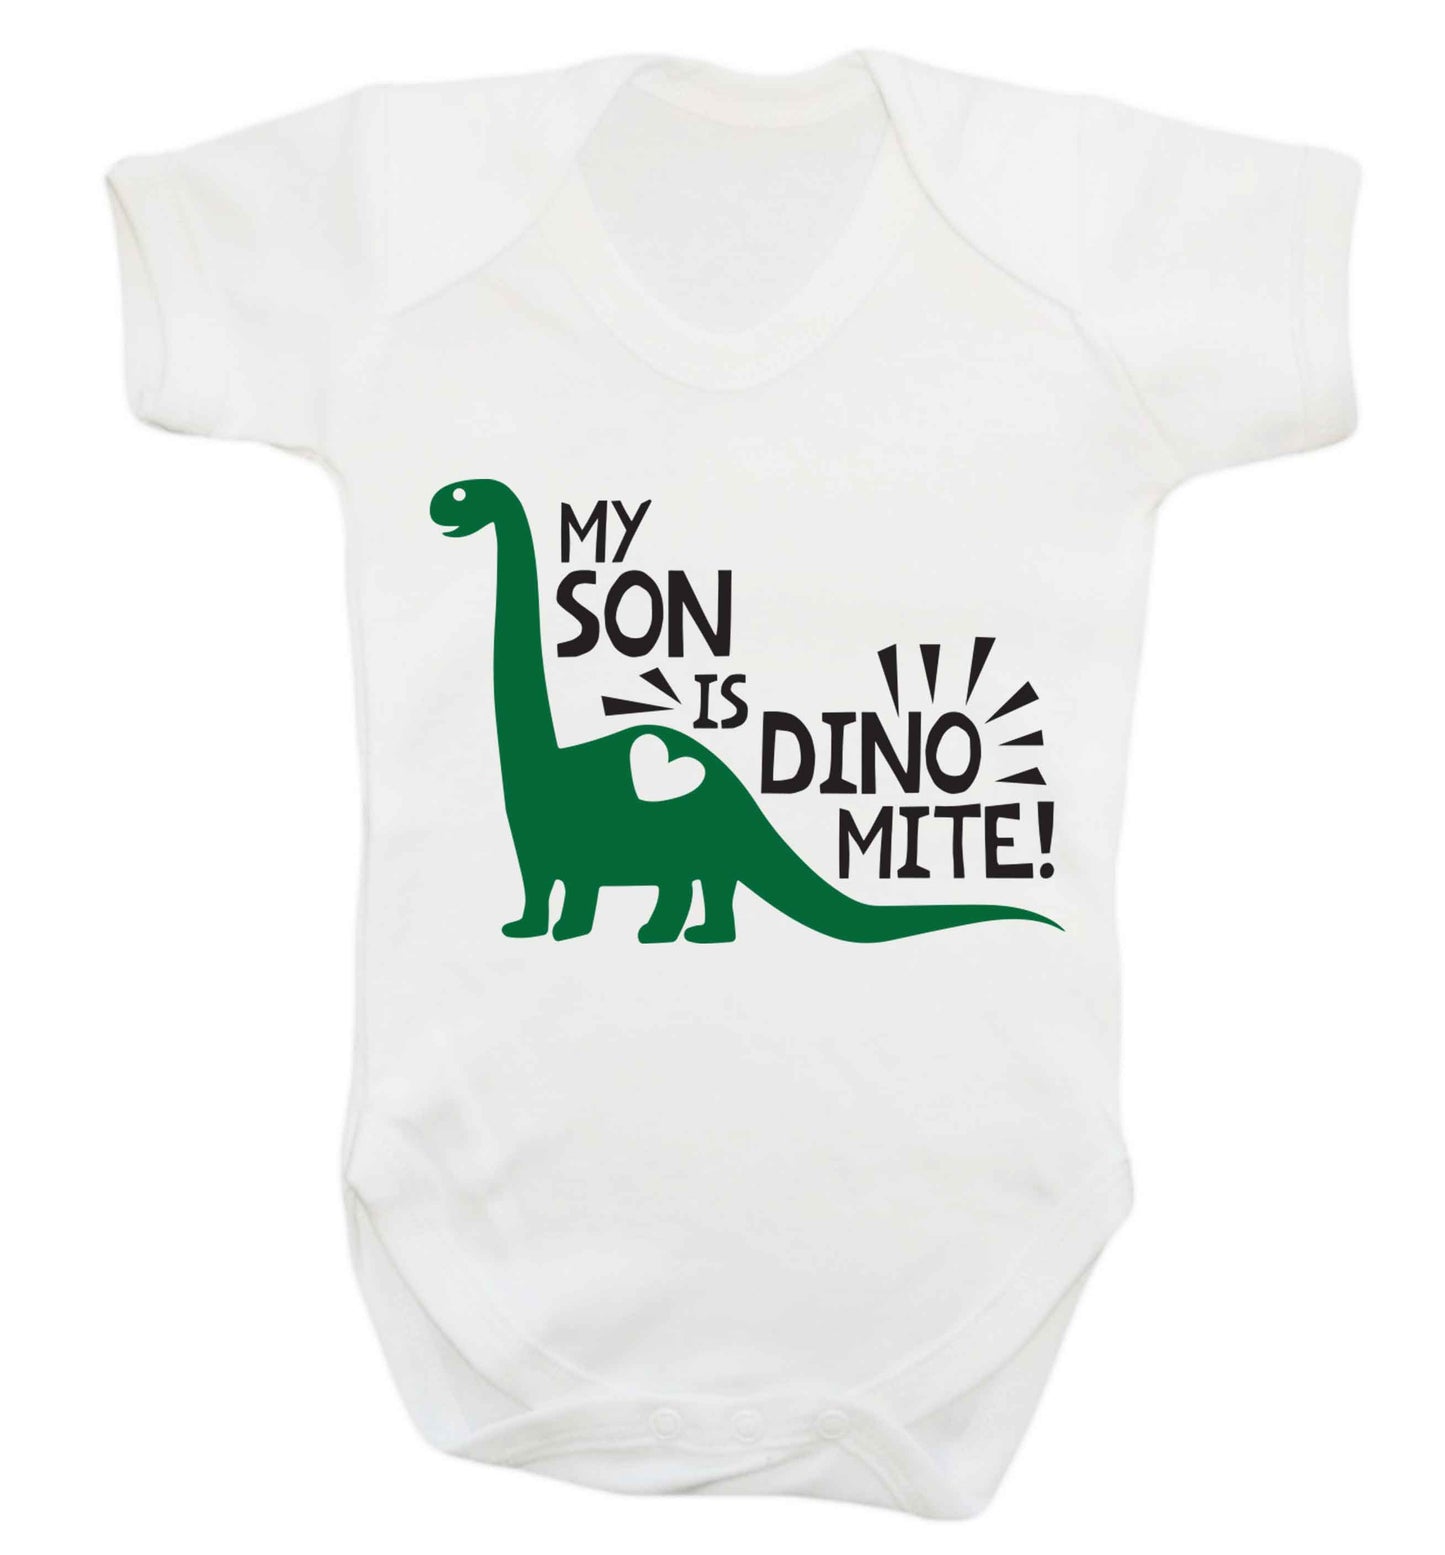 My son is dinomite! Baby Vest white 18-24 months